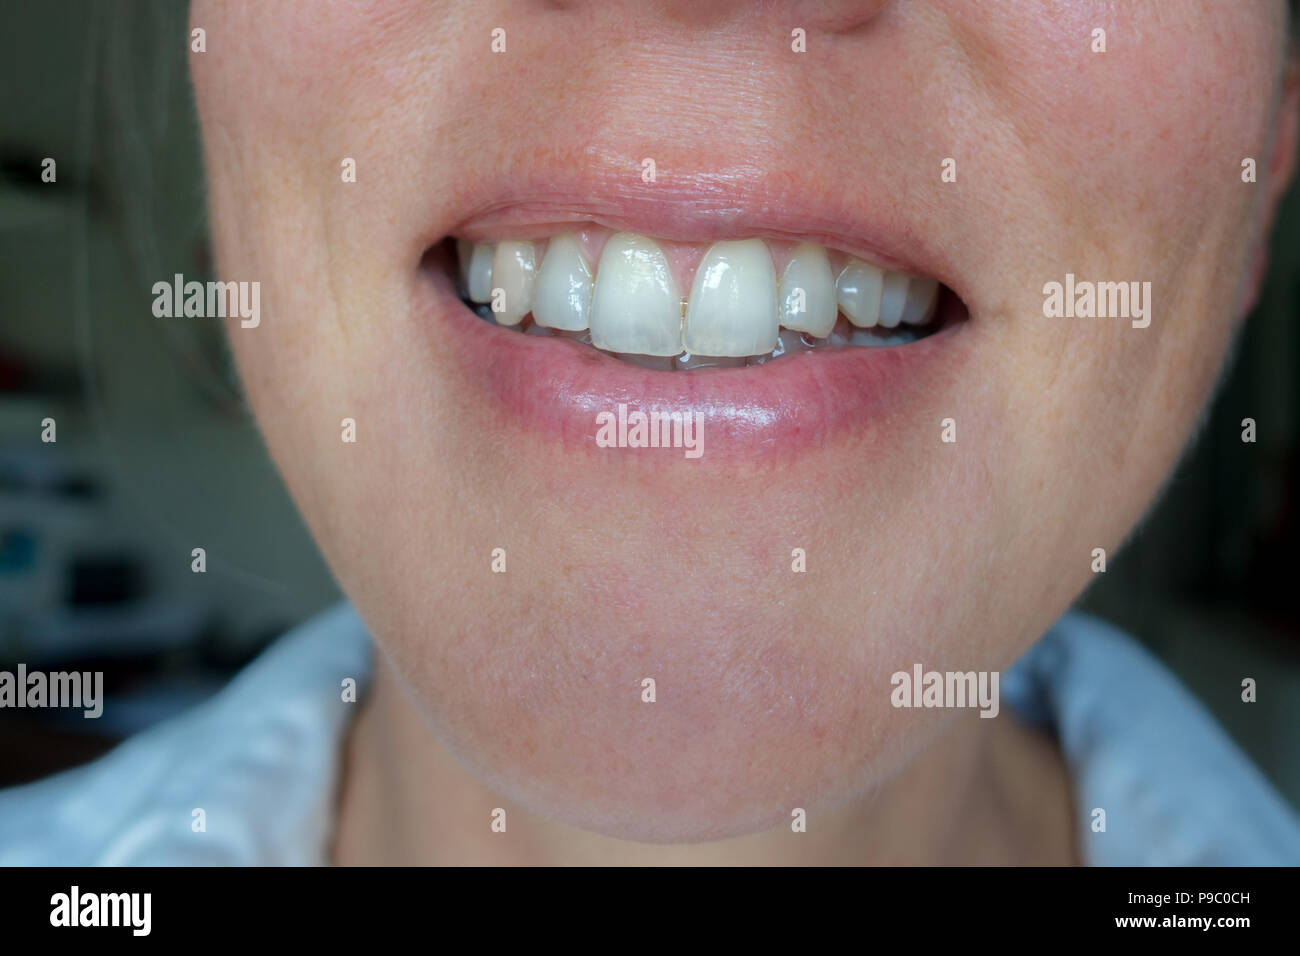 Close up of young woman smiling avec dents translucides et dent ébréchée Banque D'Images